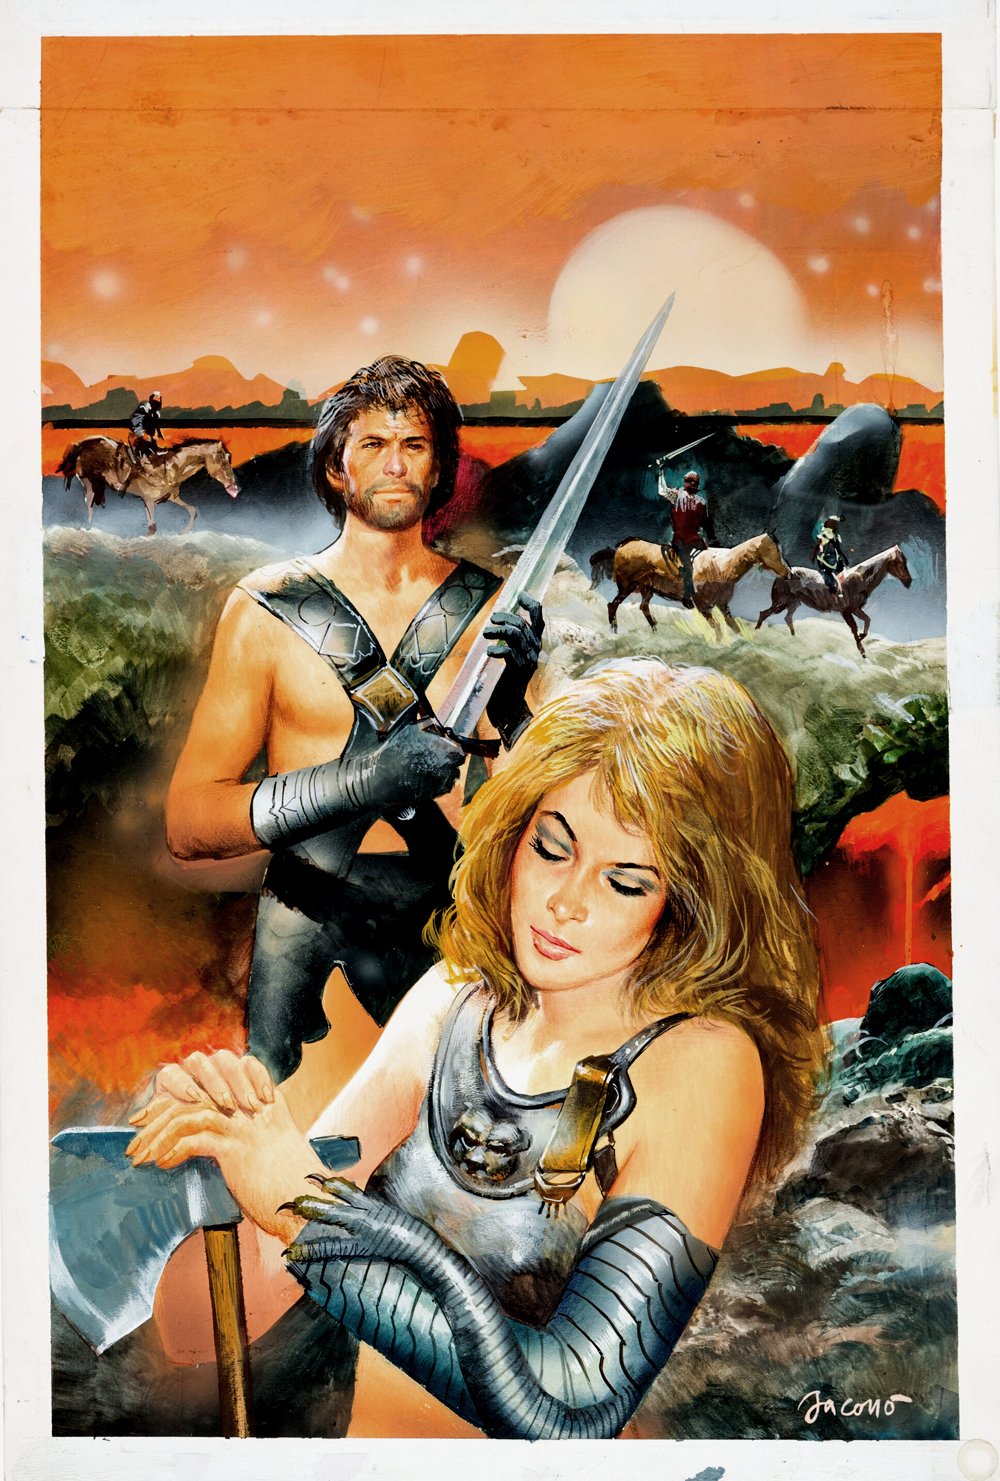 Image of Published SyFy Man & Babe Warrior Novel Cover Painting